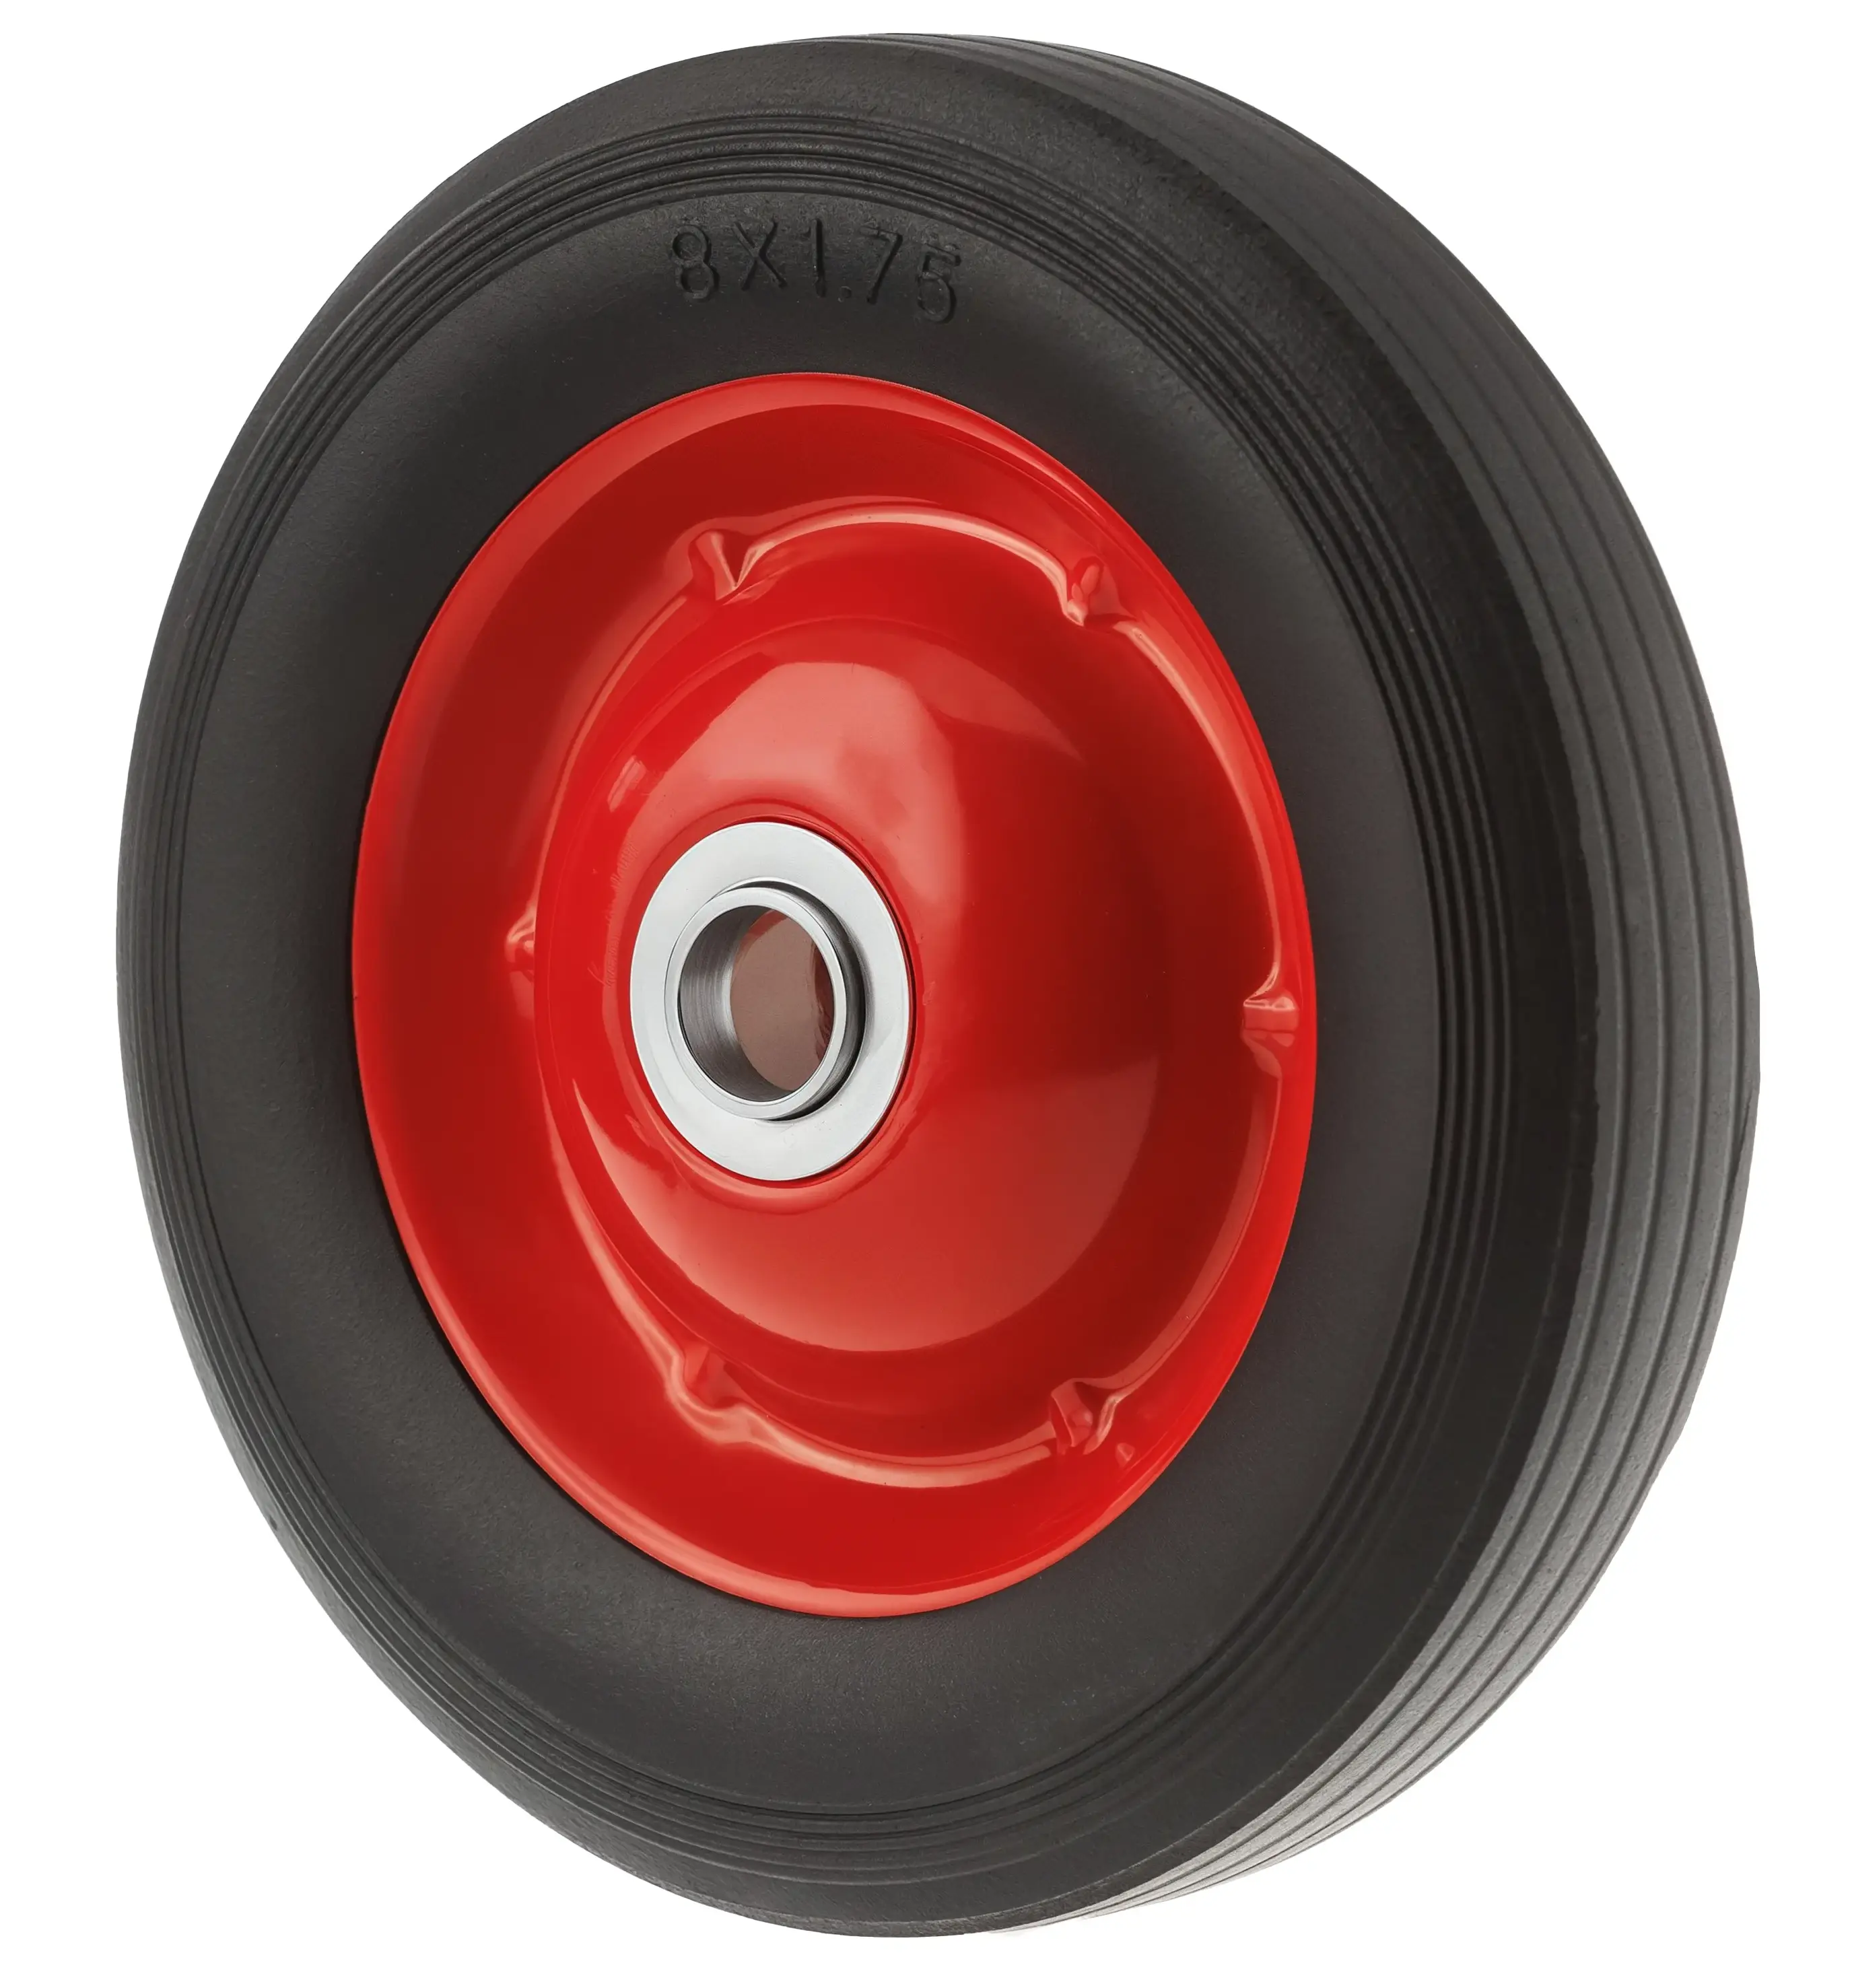 Промышленное литое колесо, диаметр 200 мм, металлический обод, симметричная ступица, роликовый подшипник, отвестие под ось 20мм - SR 1501